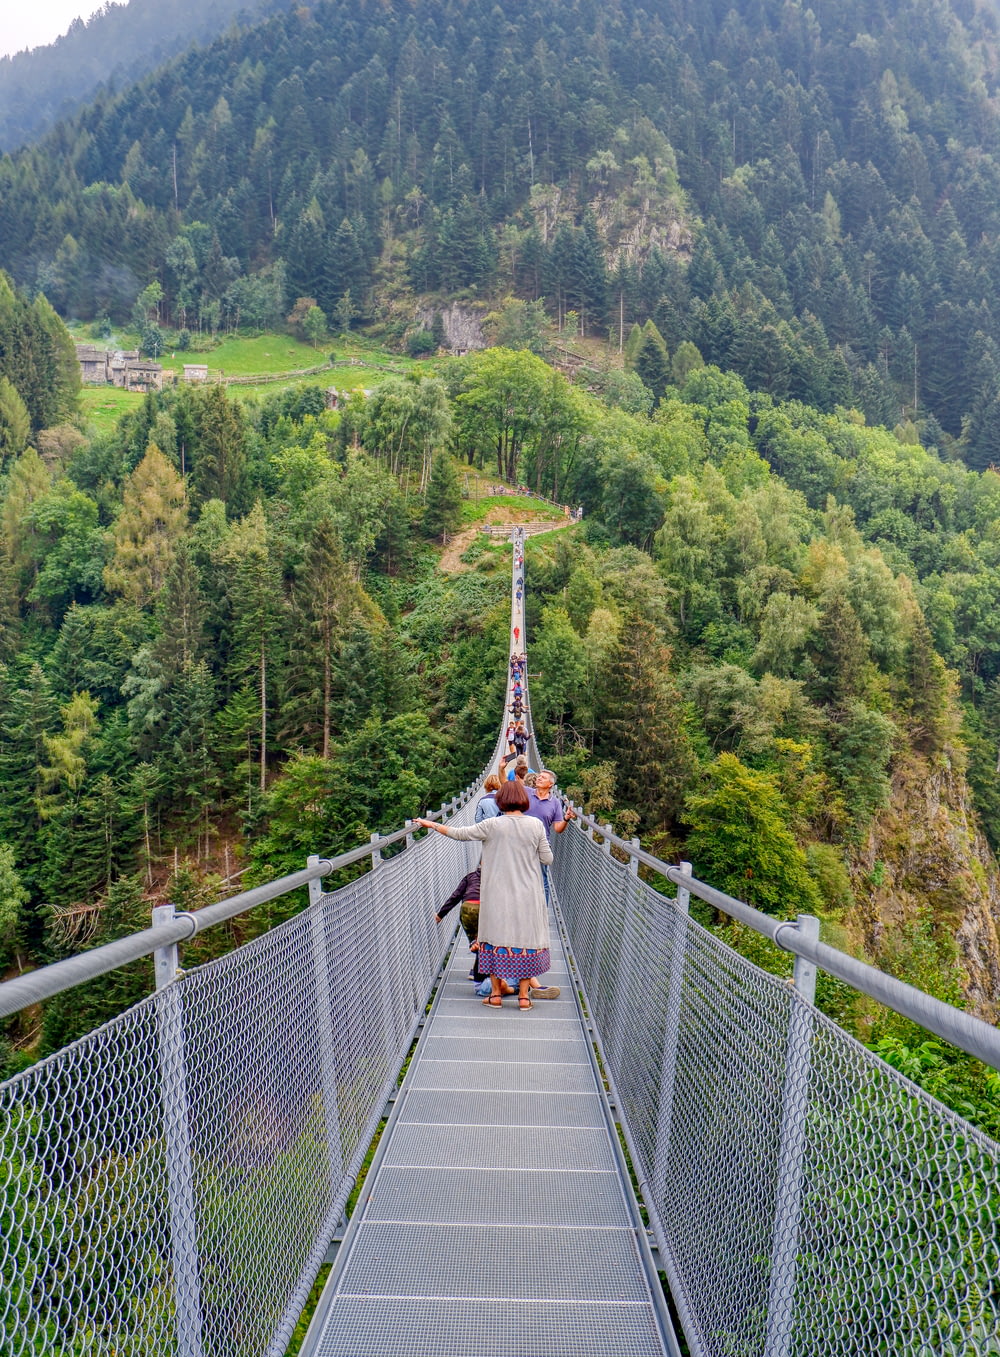 people walking on hanging bridge over green trees during daytime